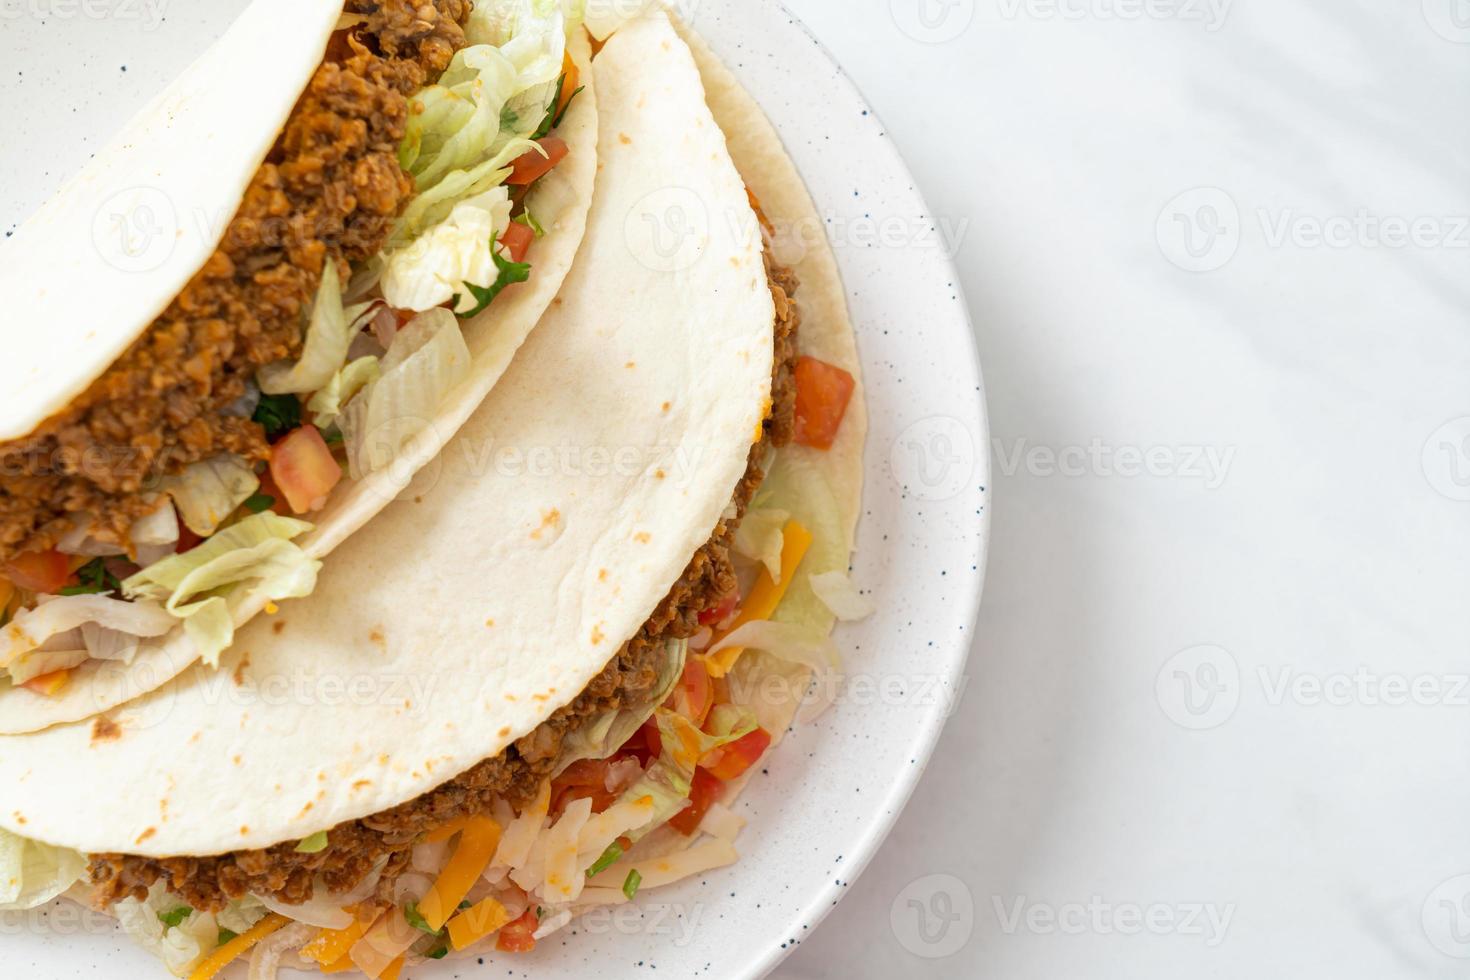 mexikanska tacos med malet kyckling foto